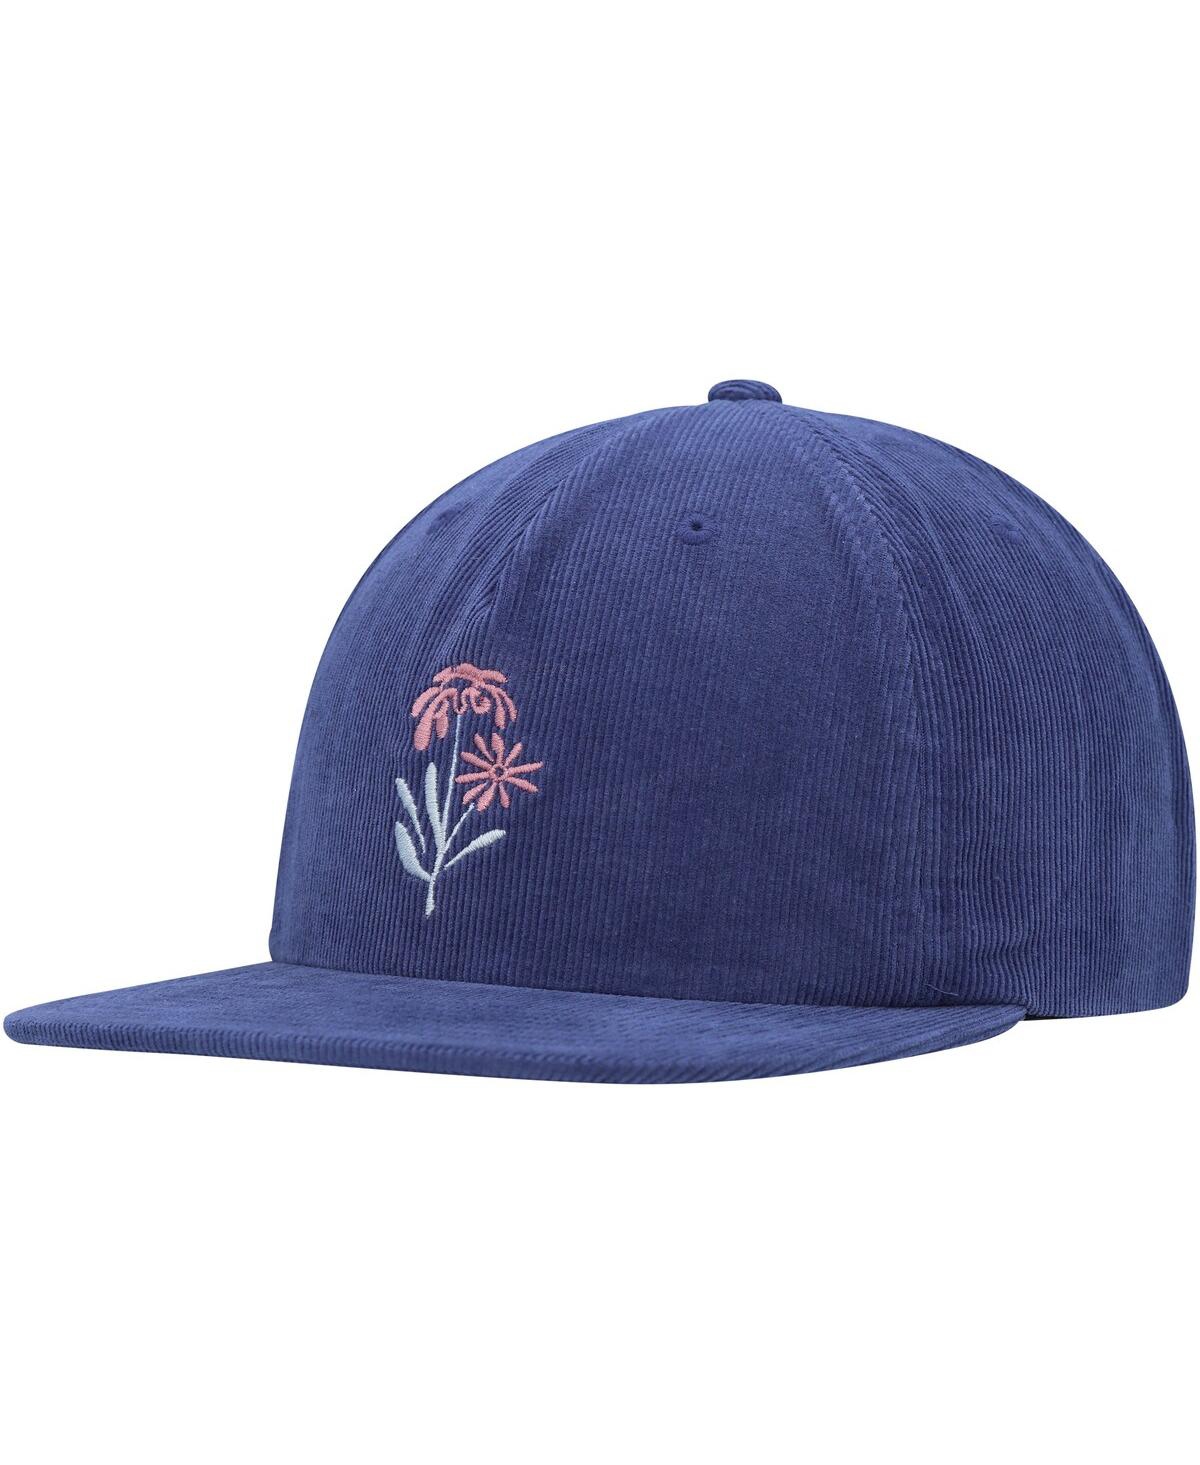 Rvca Men's  Royal Bloomed Adjustable Hat